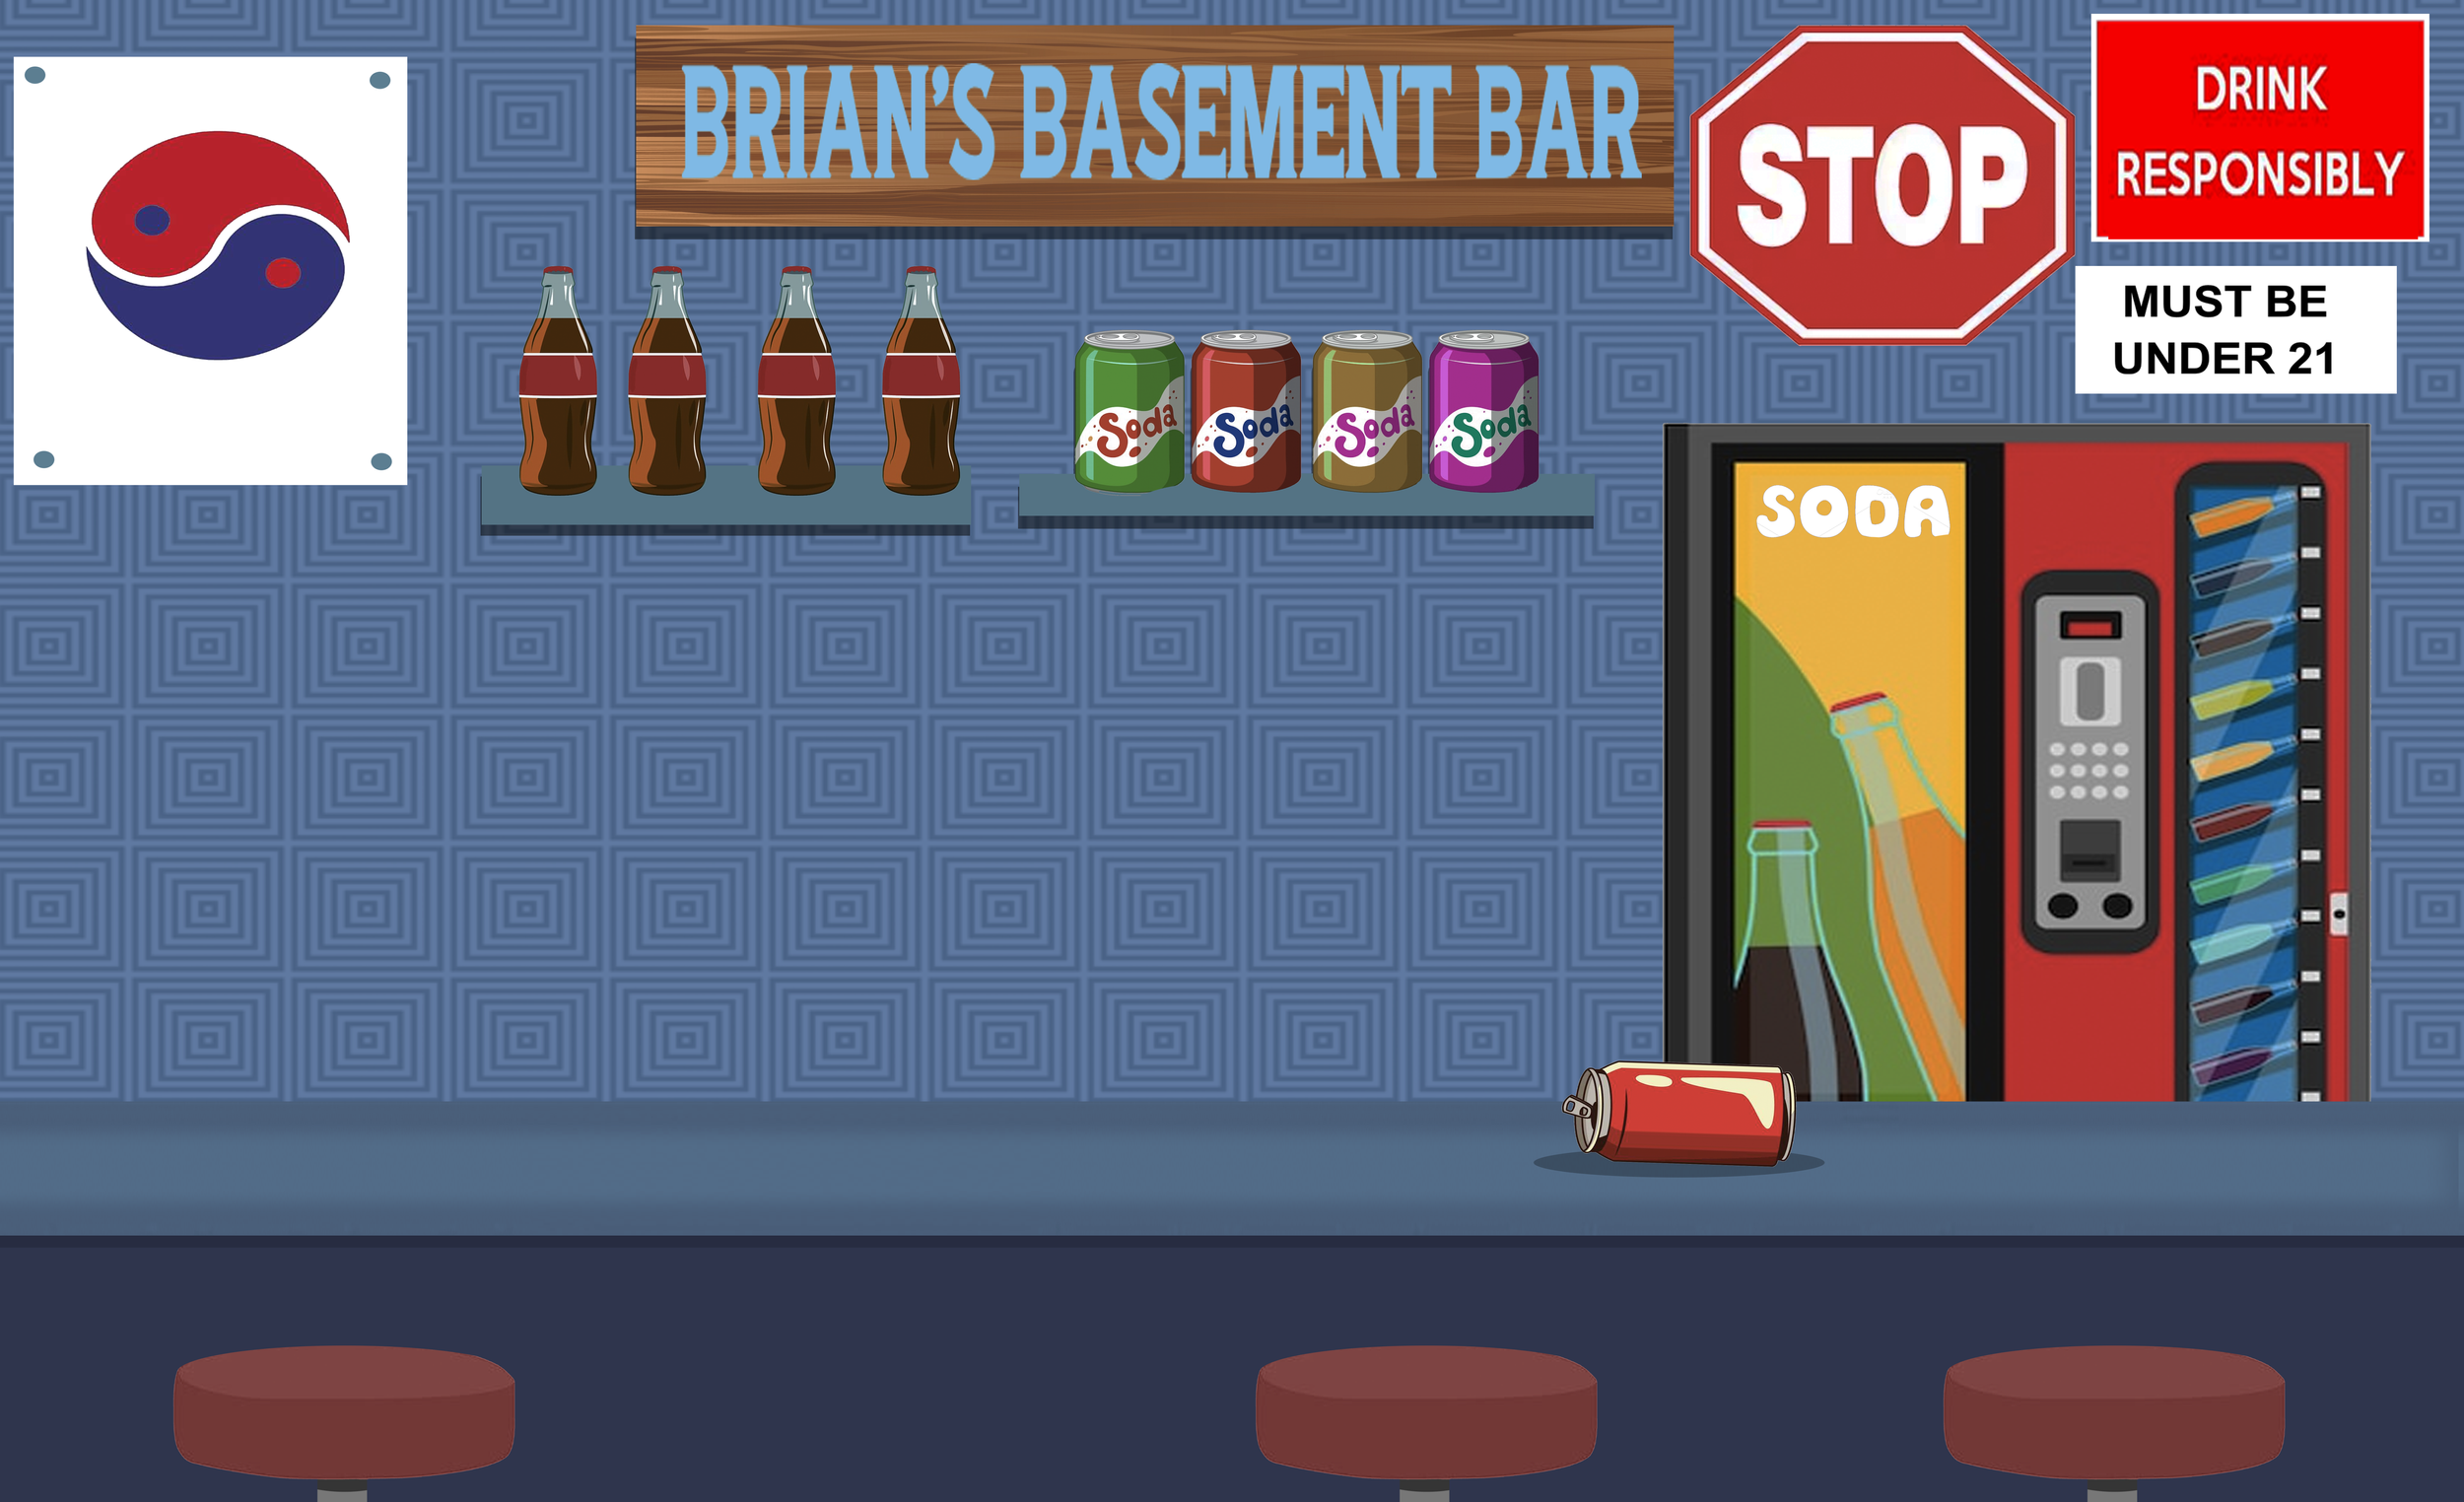 Bryan's Basement Soda Bar